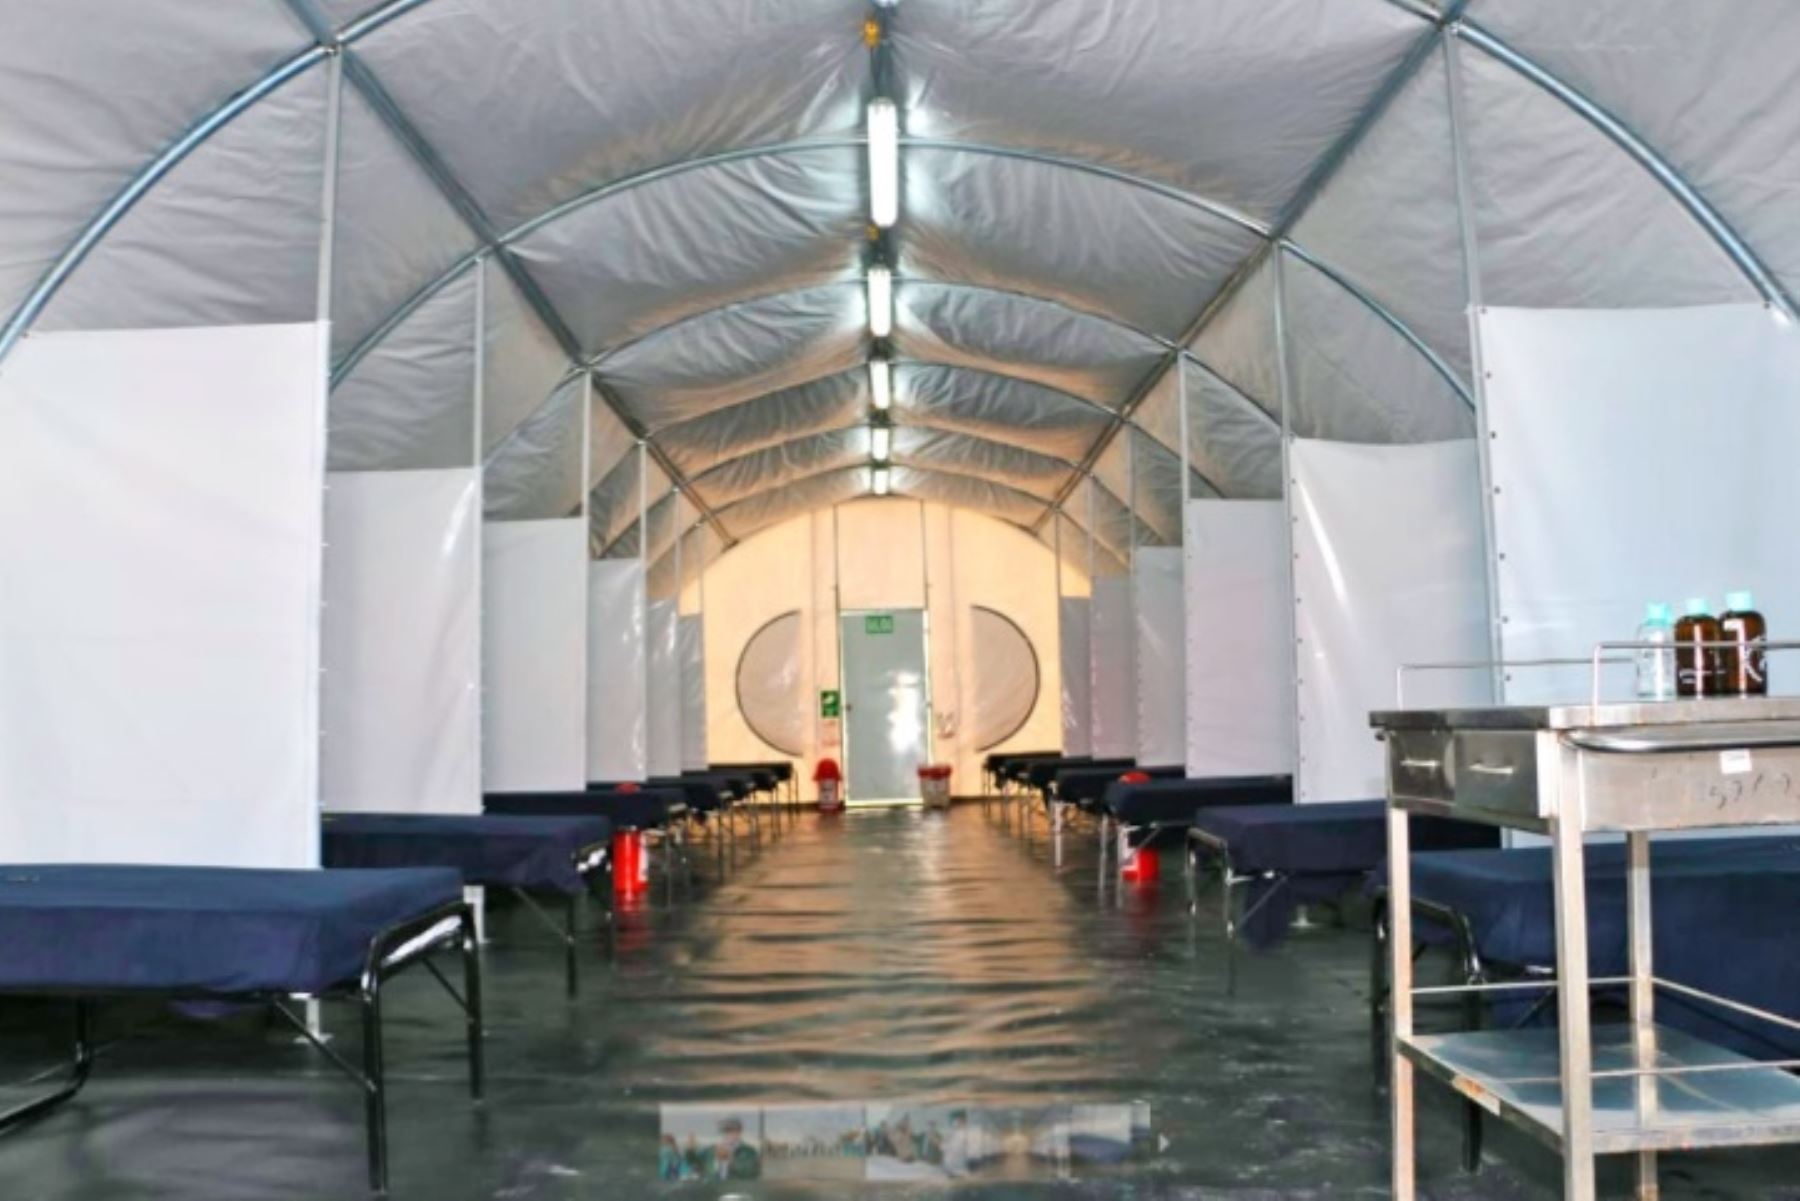 El centro de aislamiento temporal, implementado en las instalaciones del Club Sport Unión Huaral, ubicado en la provincia del mismo nombre, empezó a funcionar y recibirá a sus primeros pacientes con coronavirus en las próximas horas.